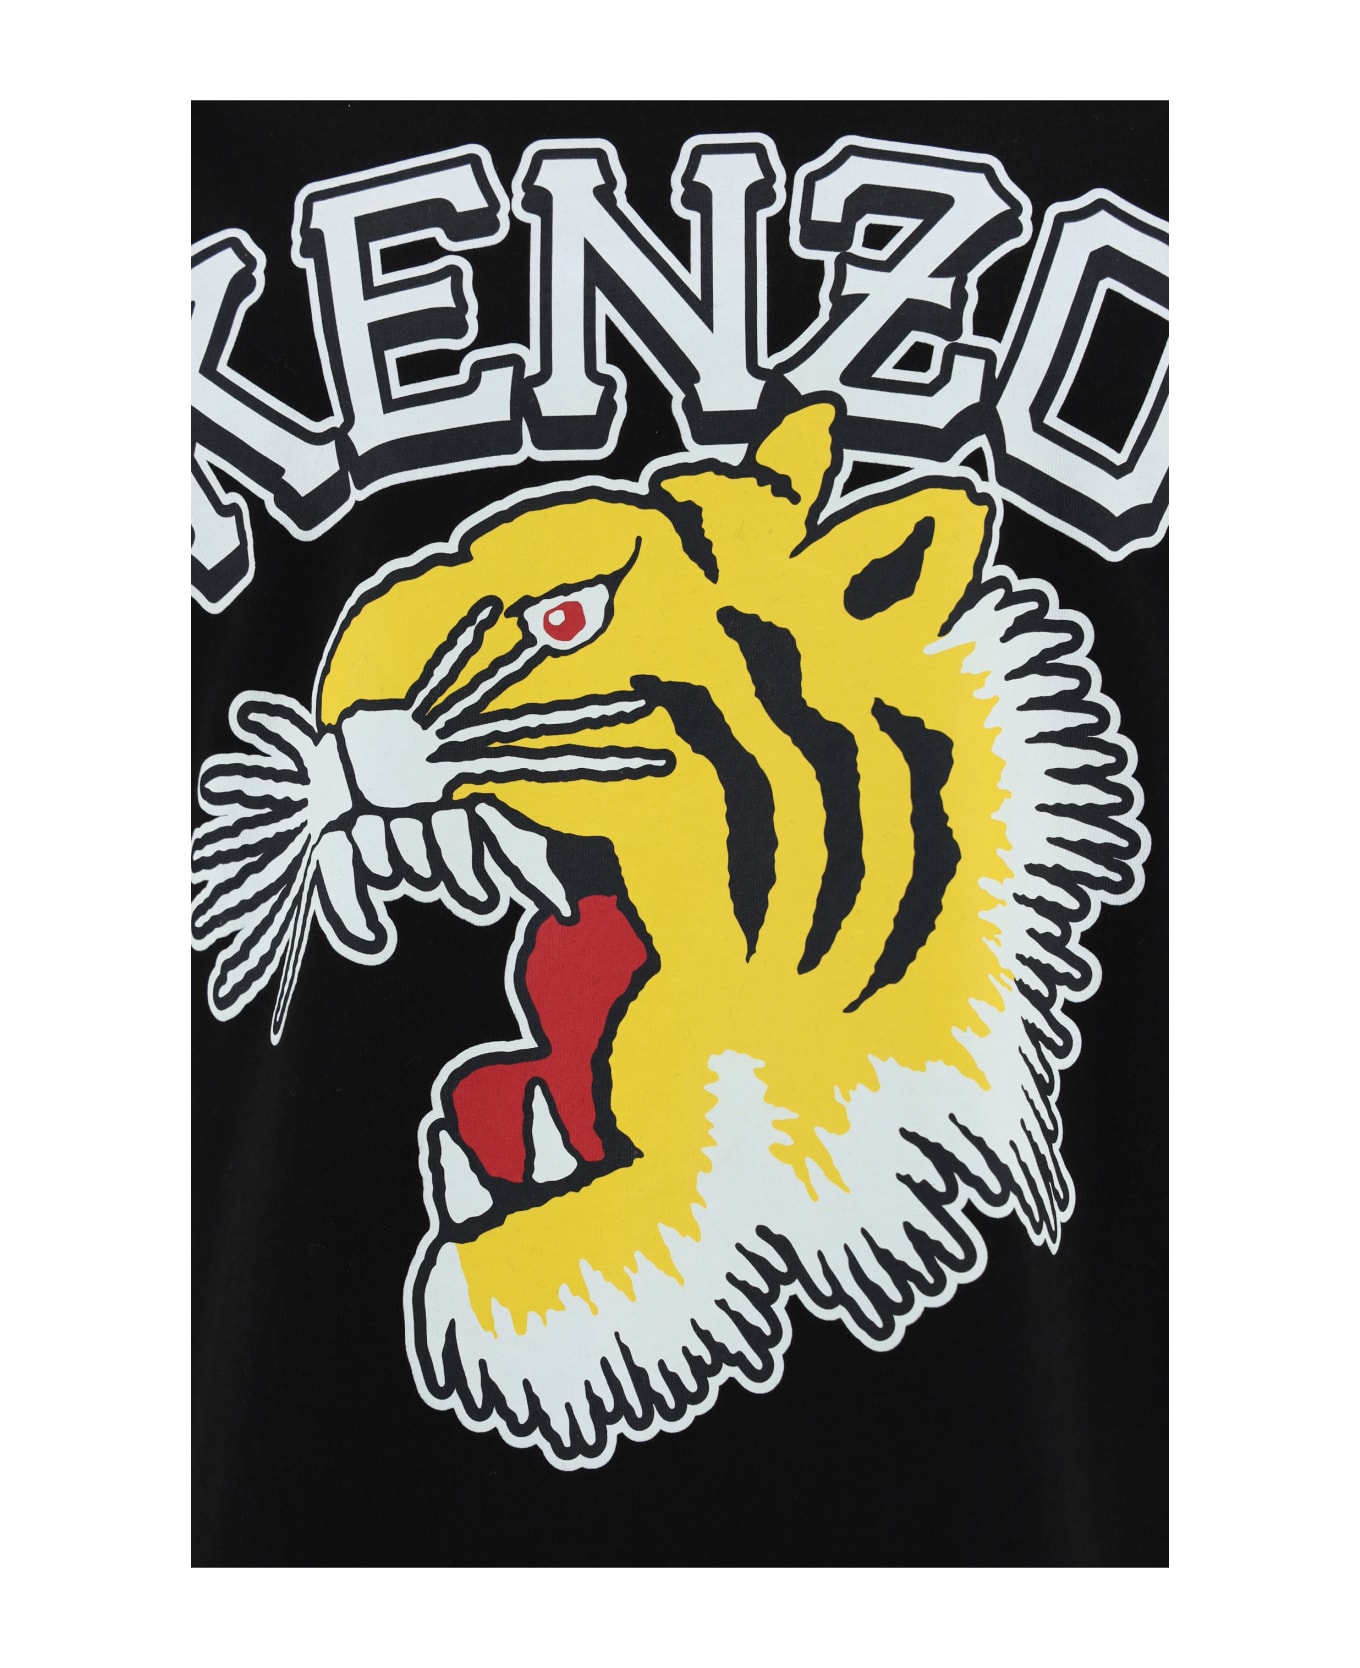 Kenzo T-shirt - BLACK